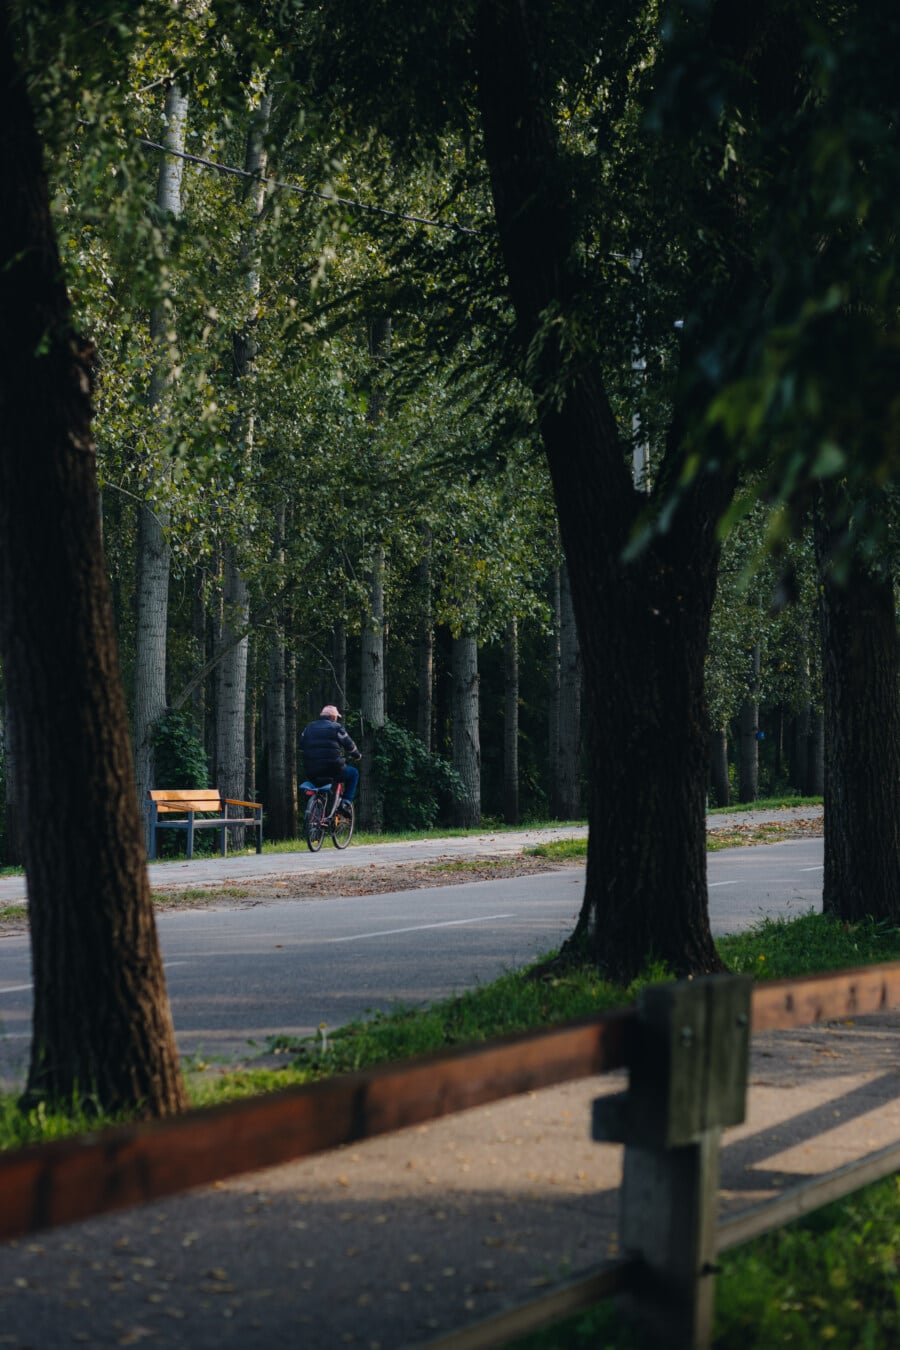 vozač, bicikl, čovjek, cesta, nacionalni park, drvo, ulica, park, drvo, na otvorenom